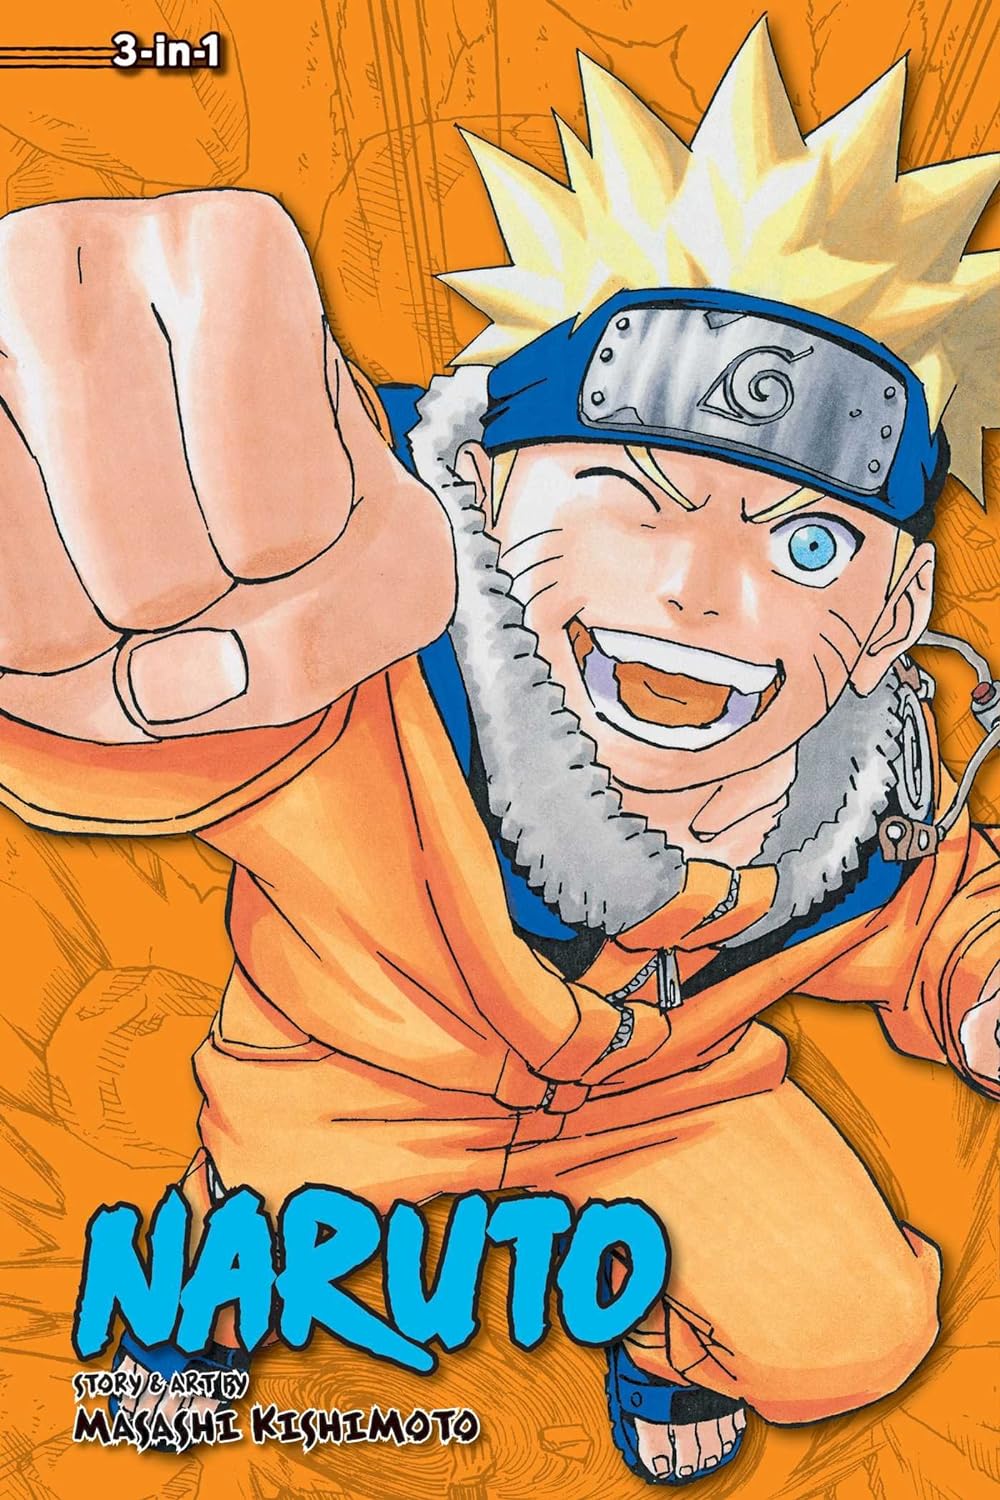 Naruto (3-in-1 Edition) Vol. 7 (Vol. 19, 20 & 21)